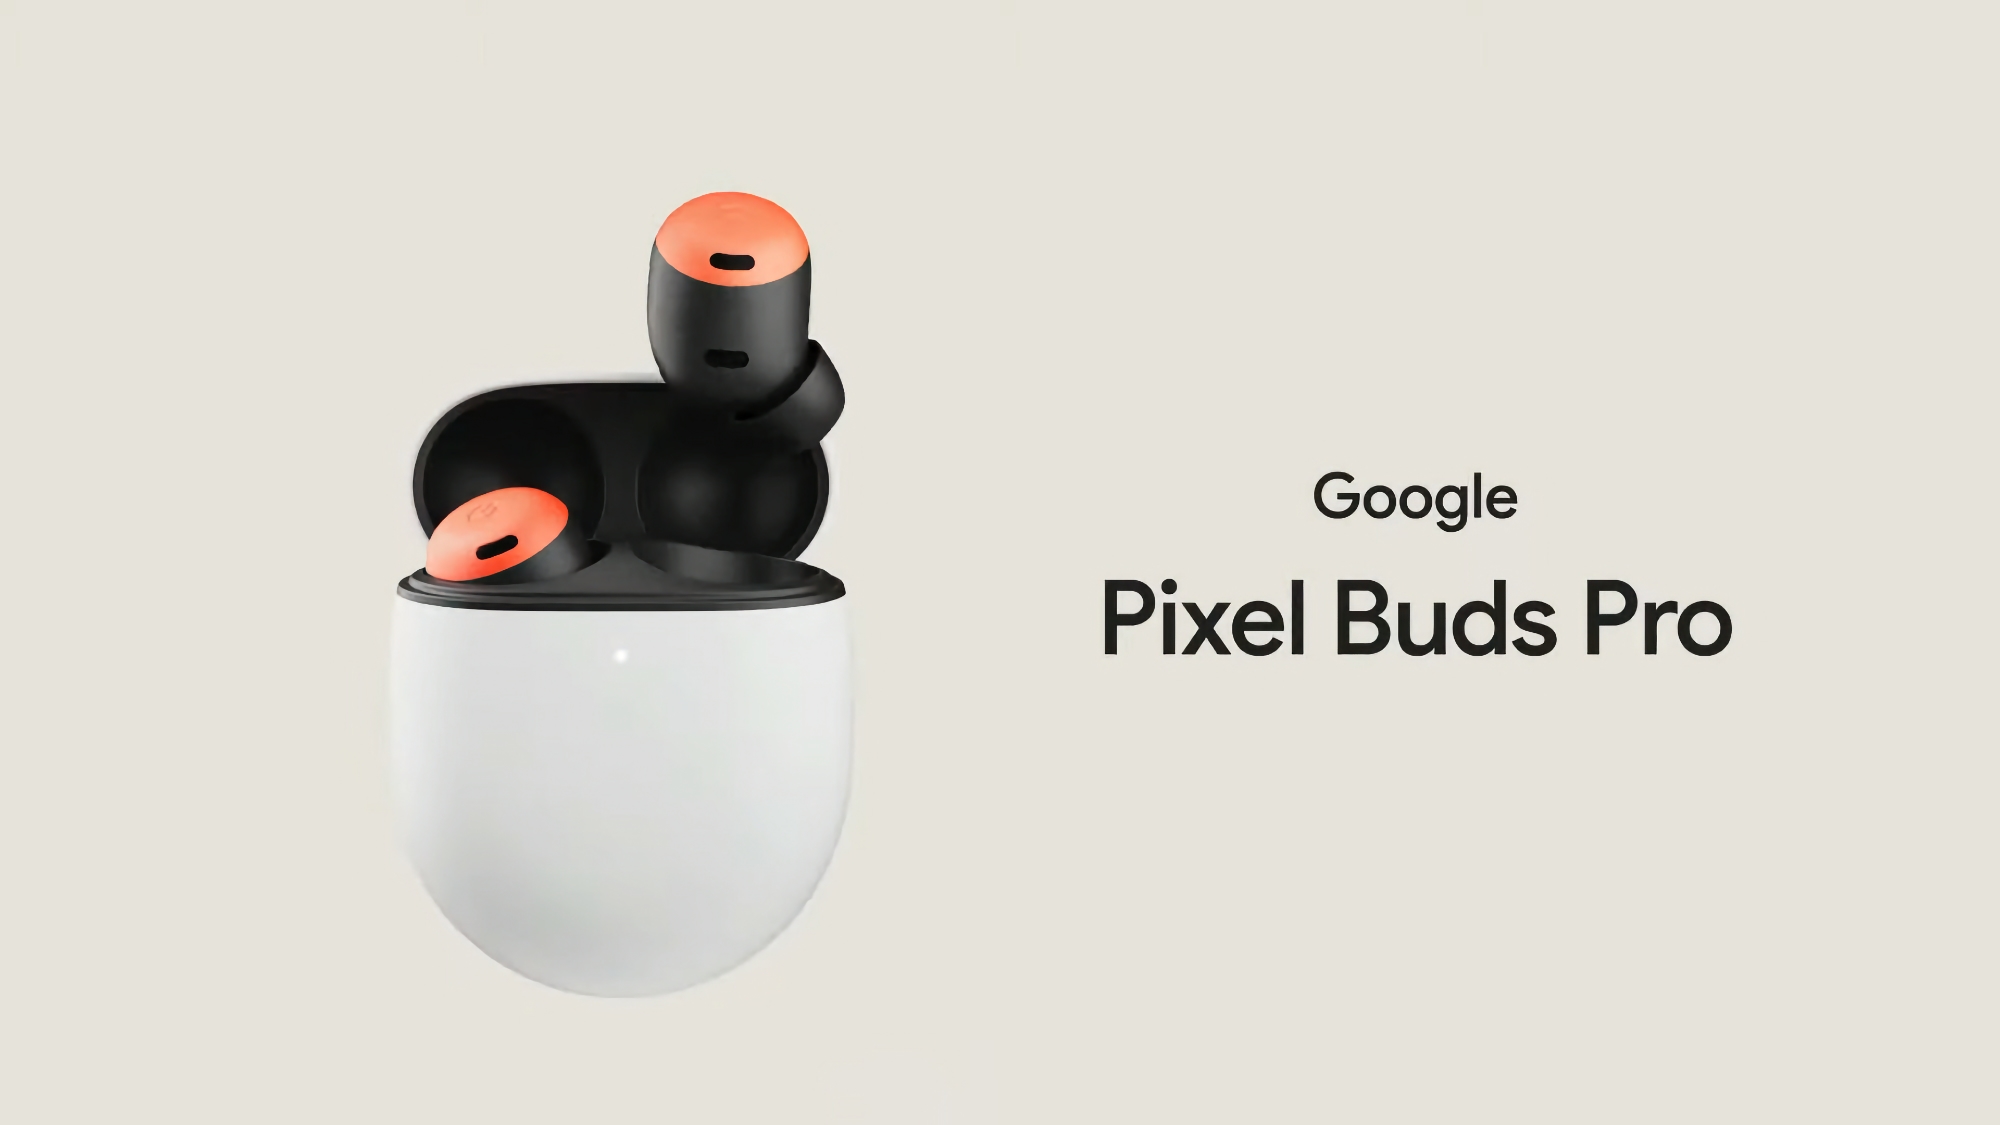 Oferta por tiempo limitado: Google Pixel Buds Pro en Amazon con 60 € de descuento